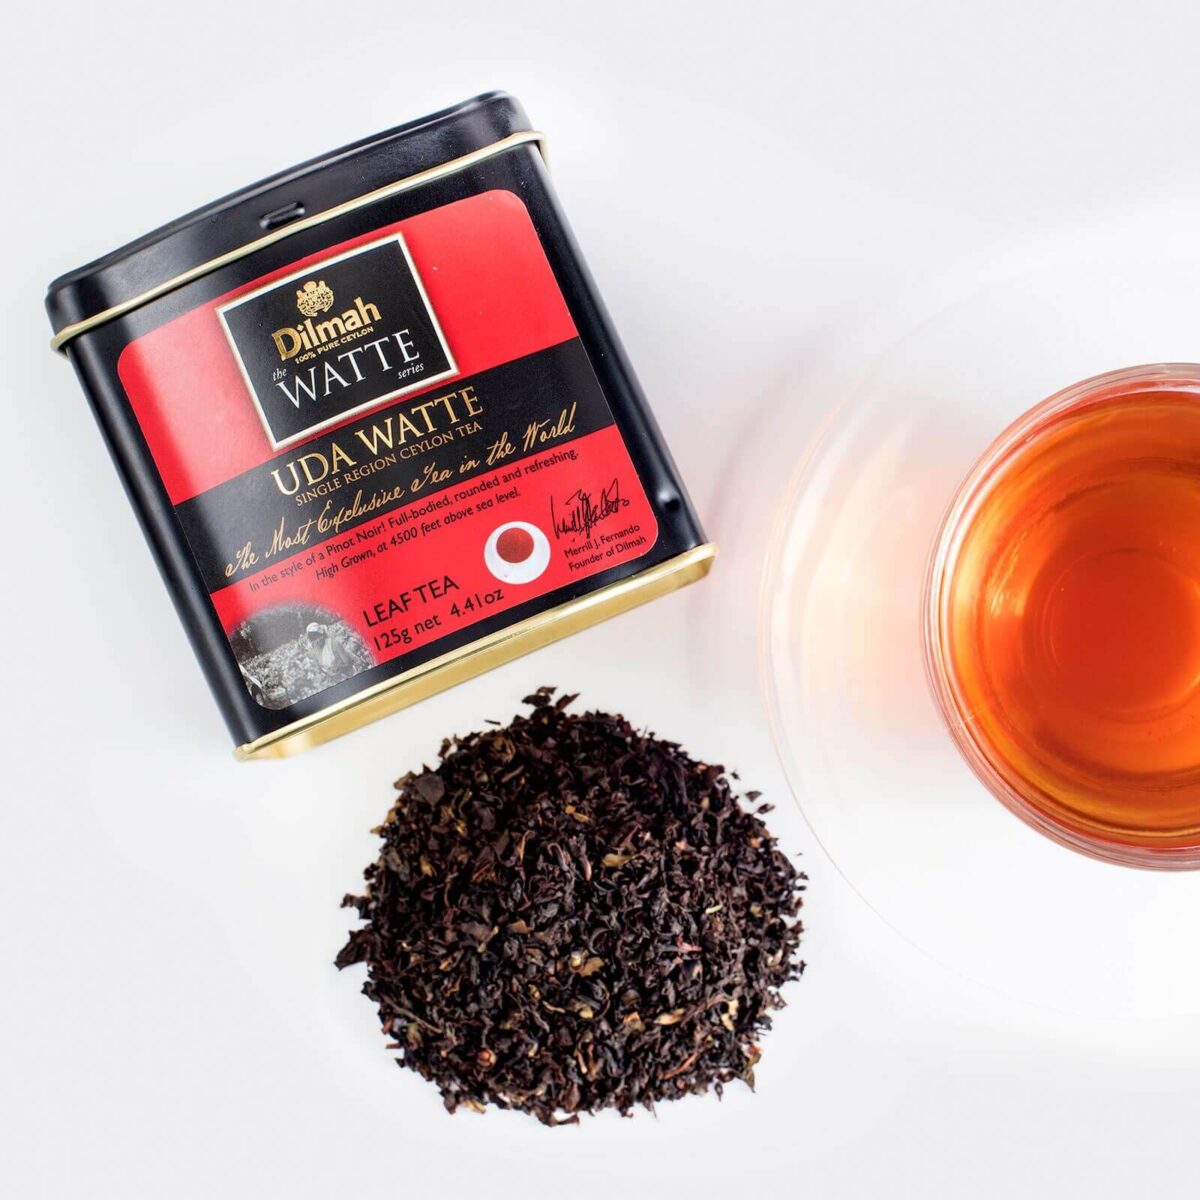 Dilmah Ceylon uda watte black leaf tea